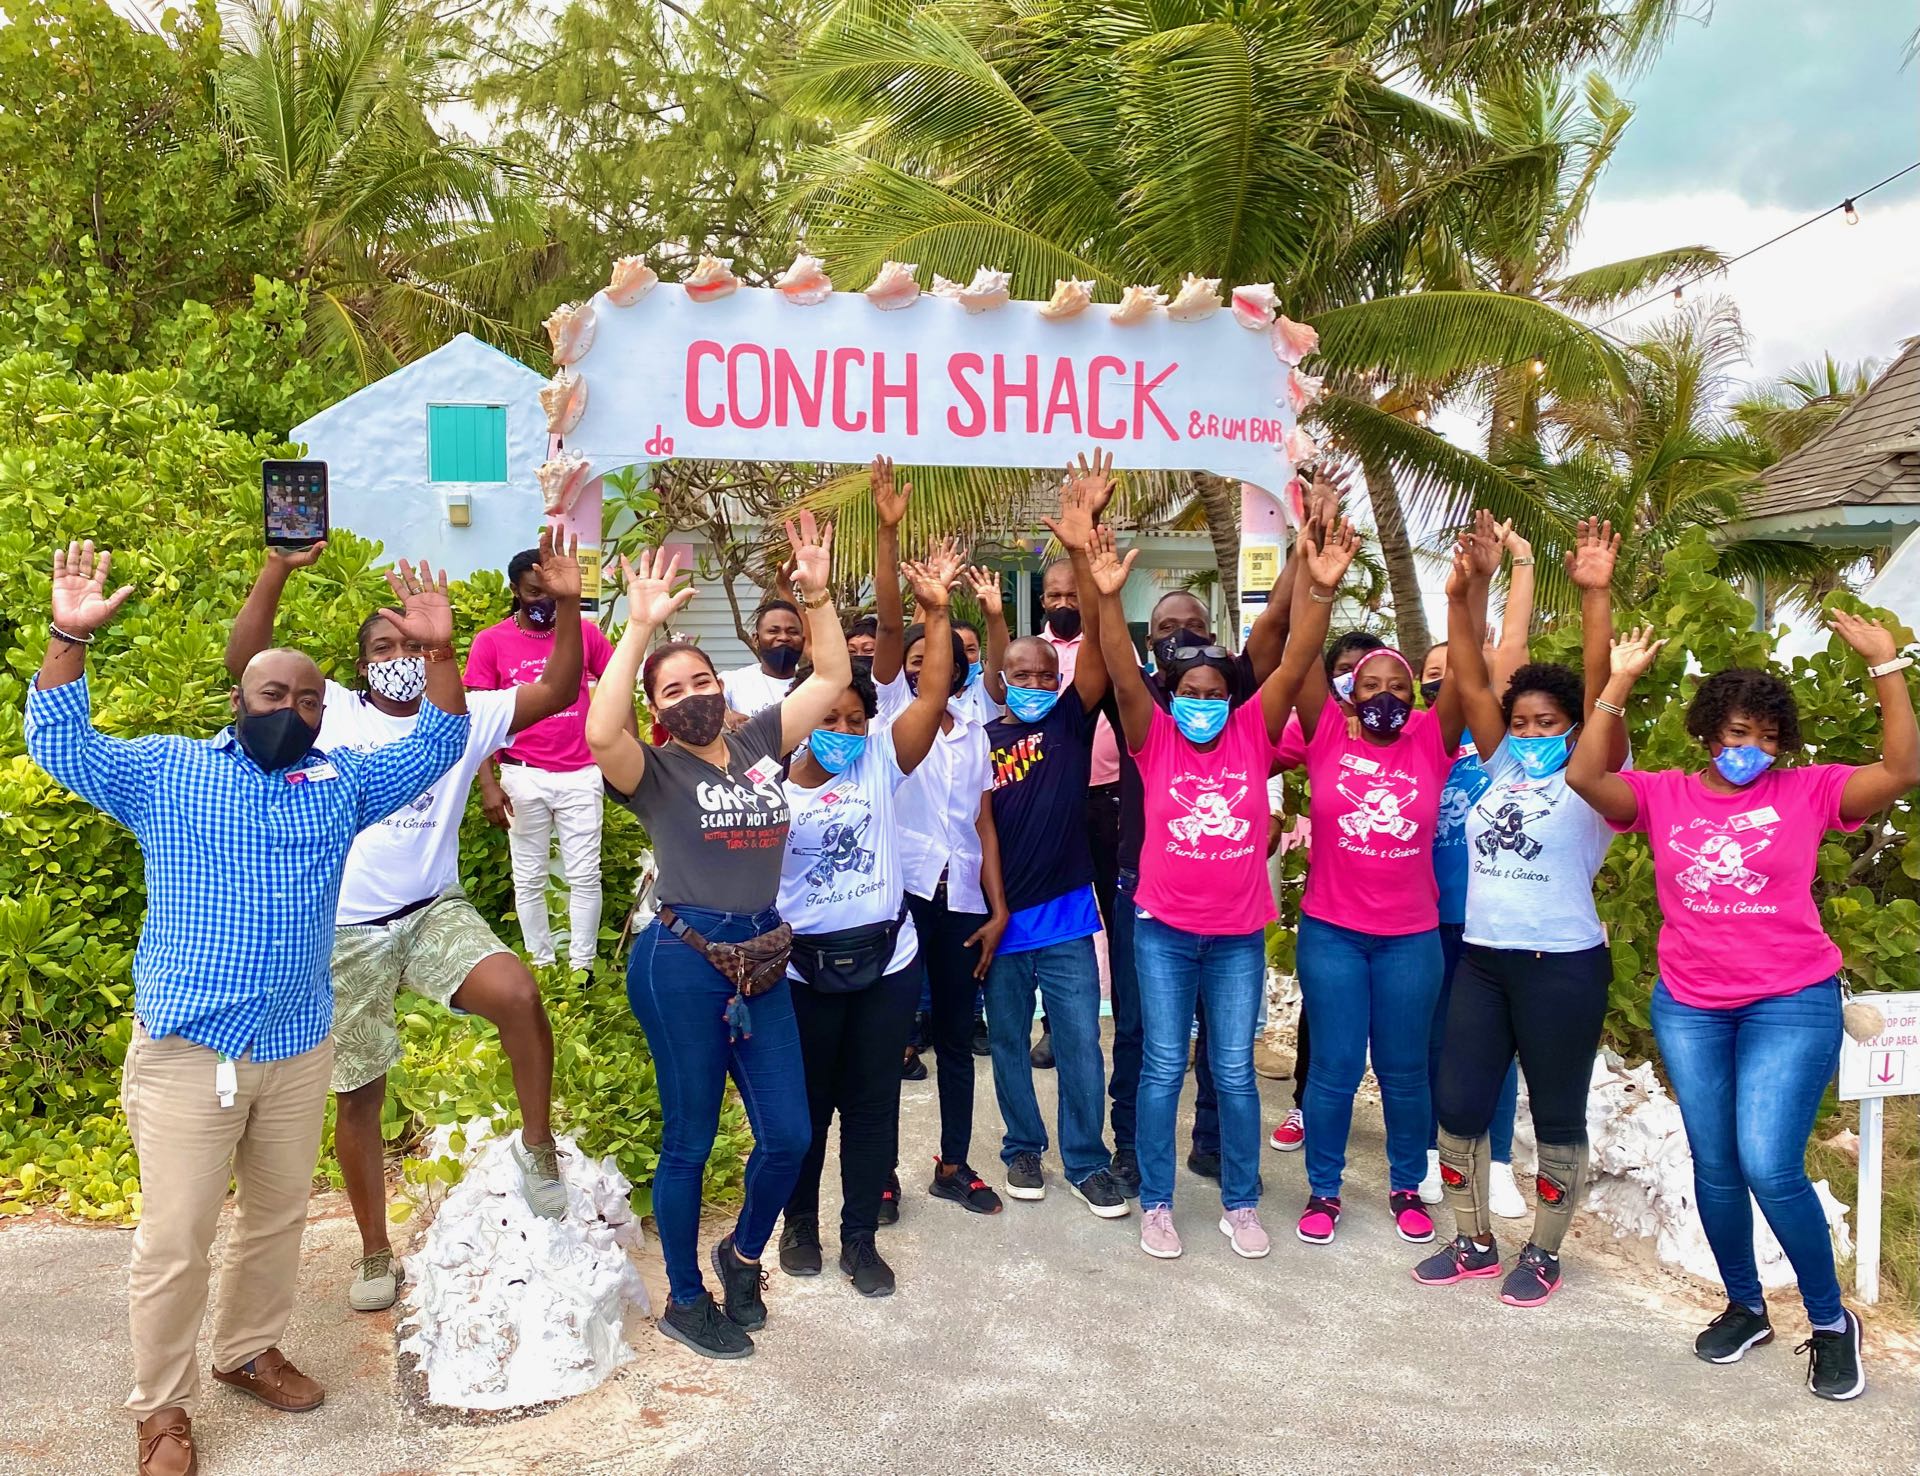 da Conch Shack Turks & Caicos